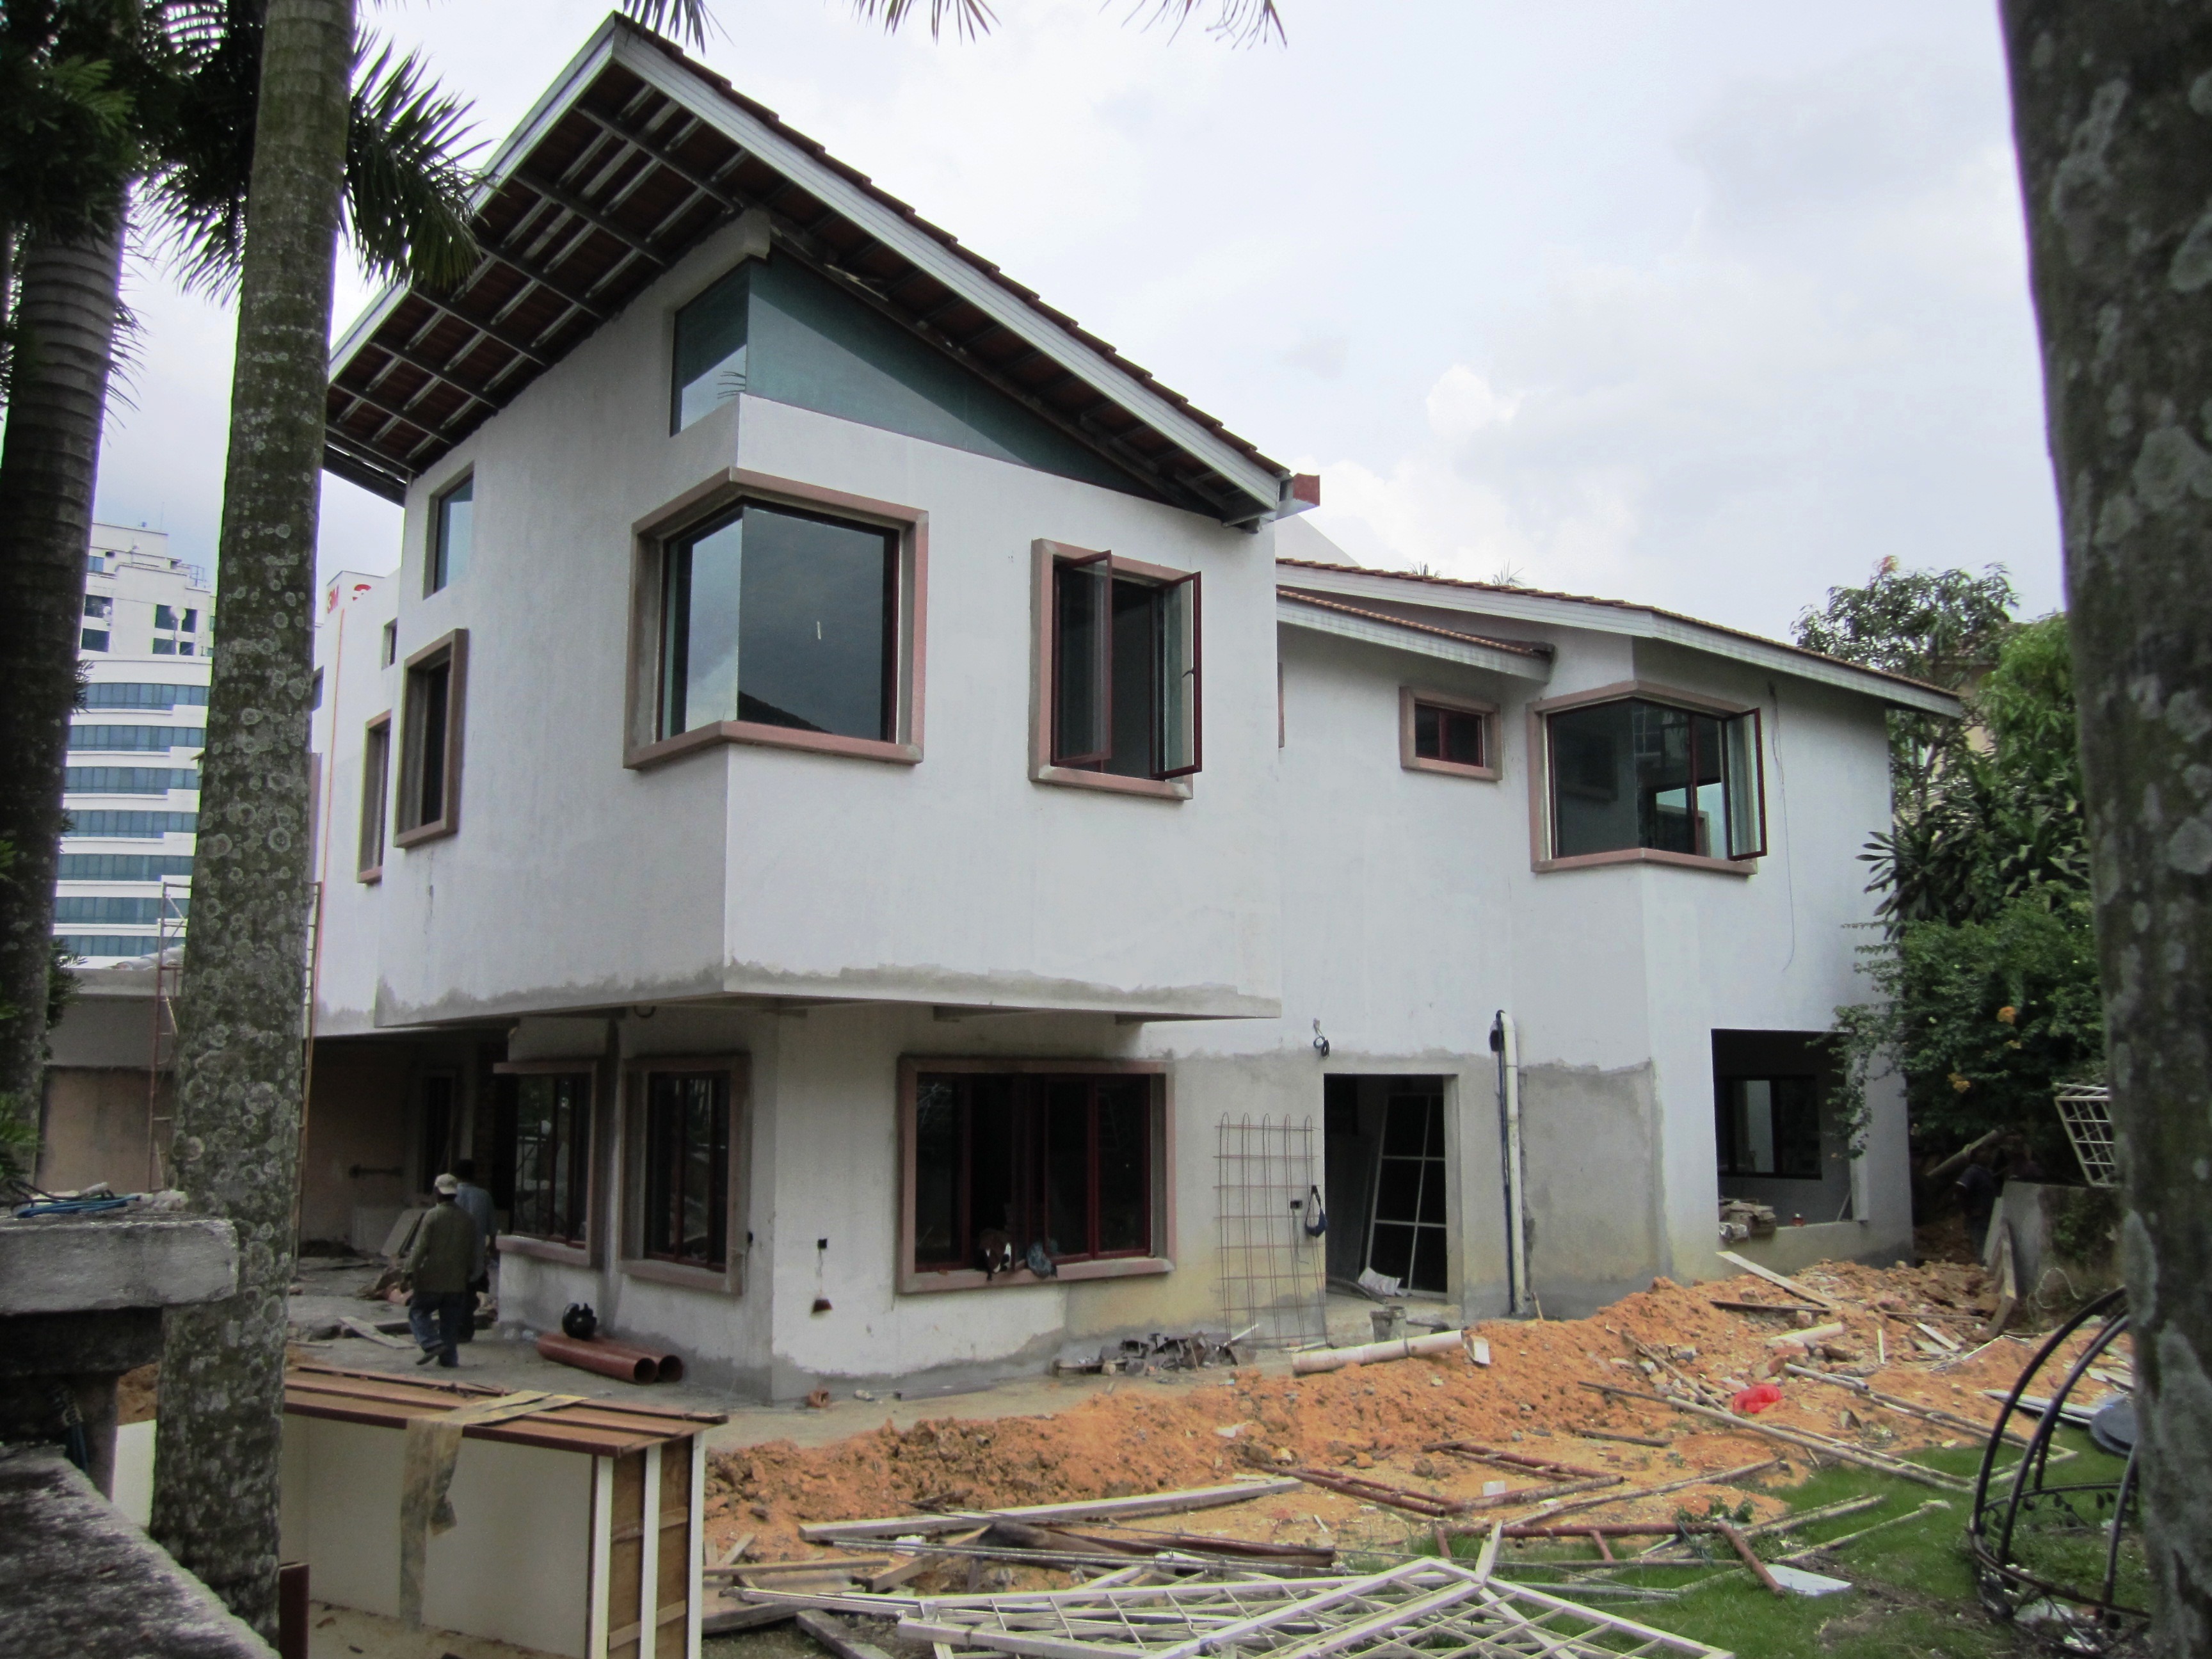 2 Storey Semi Detached House, Tropicana Golf Resort - Ming Joo Construction